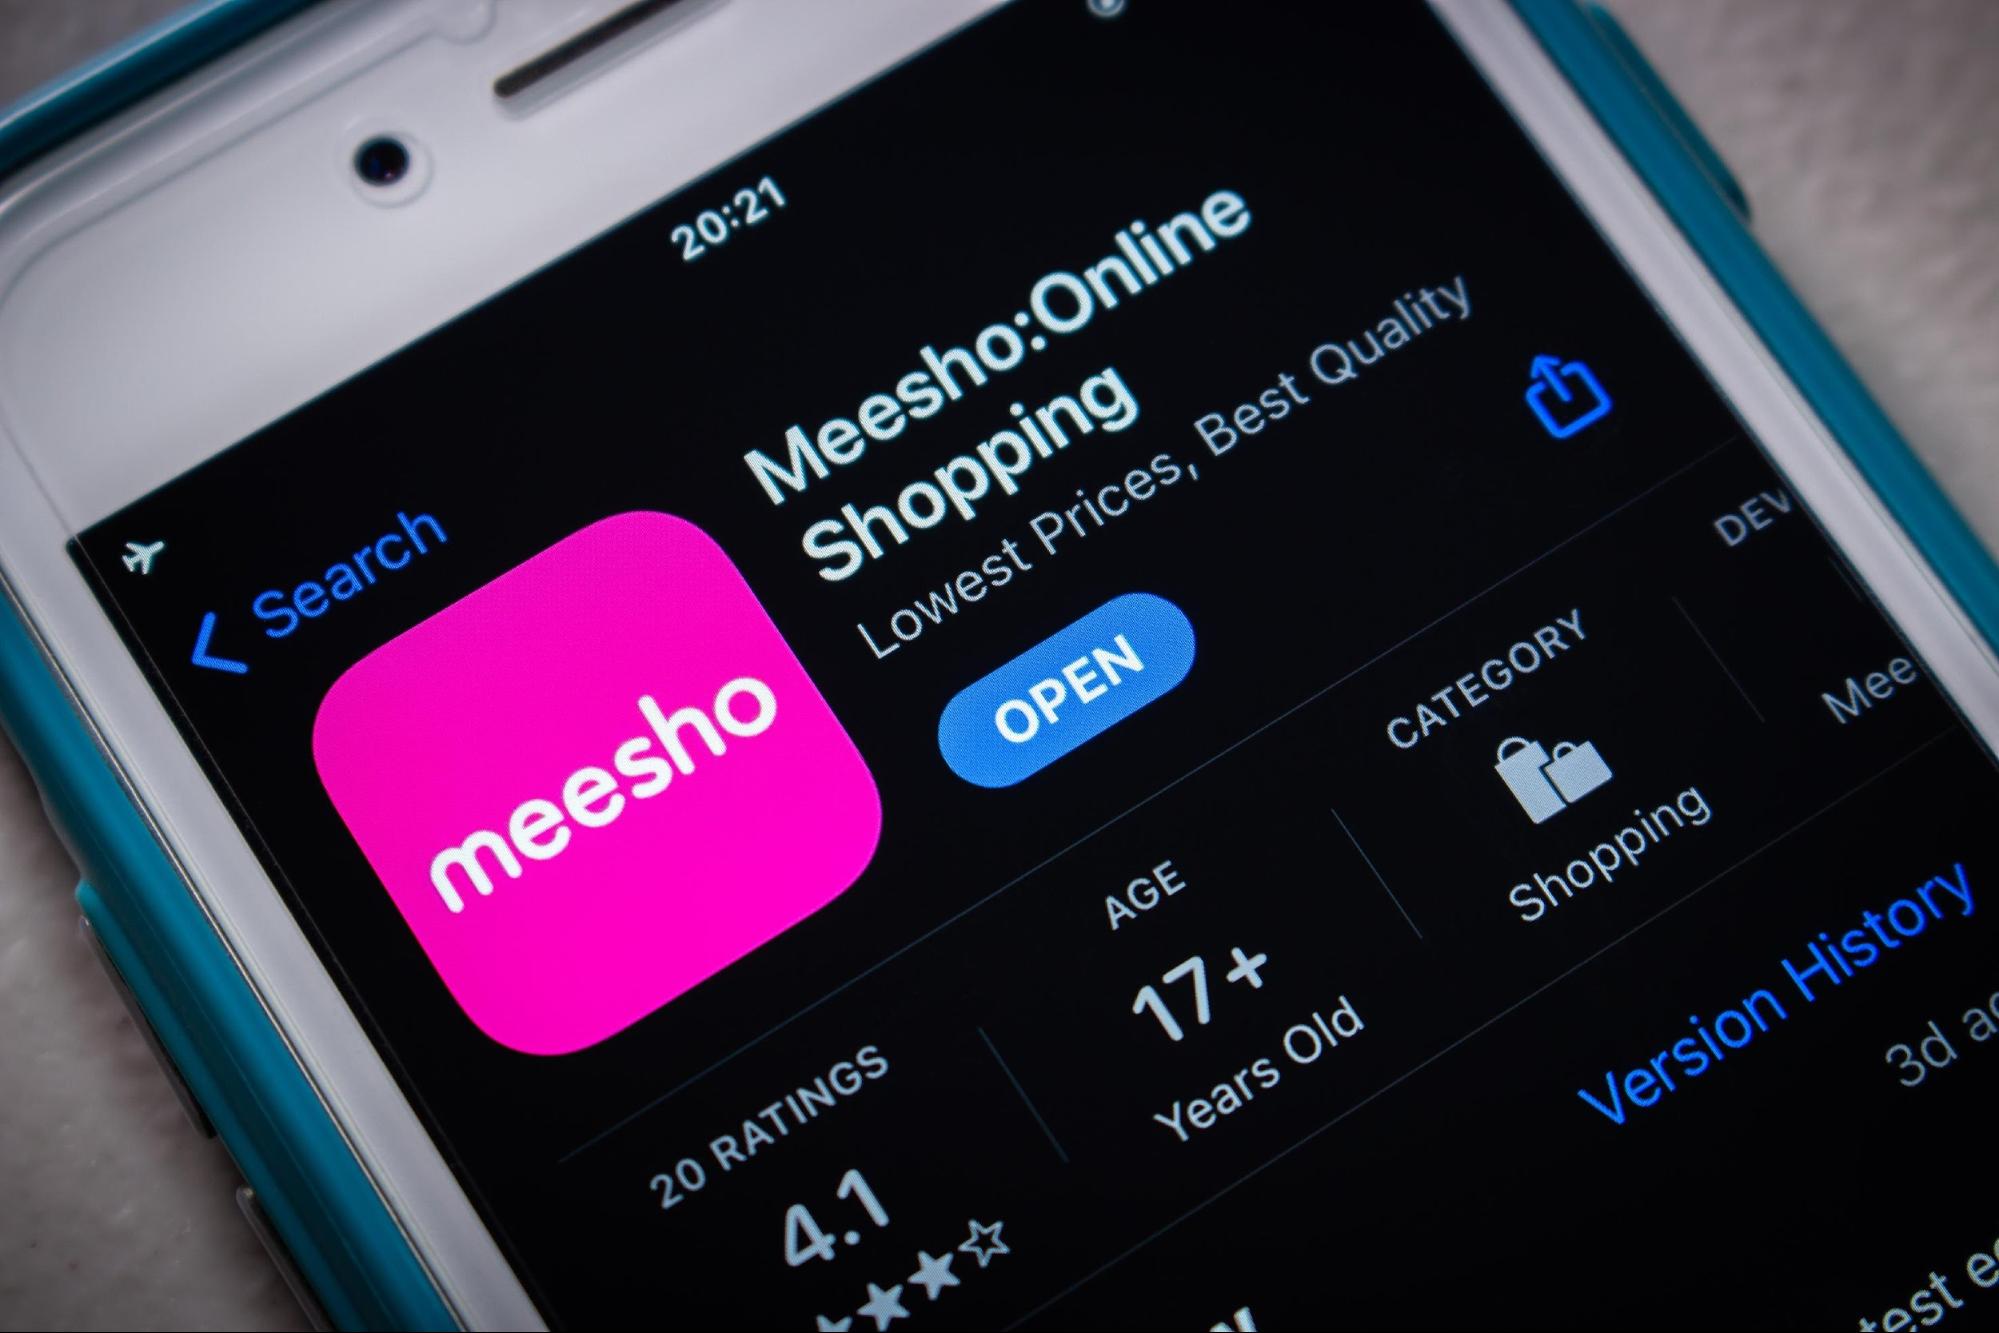 Meesho Supplier